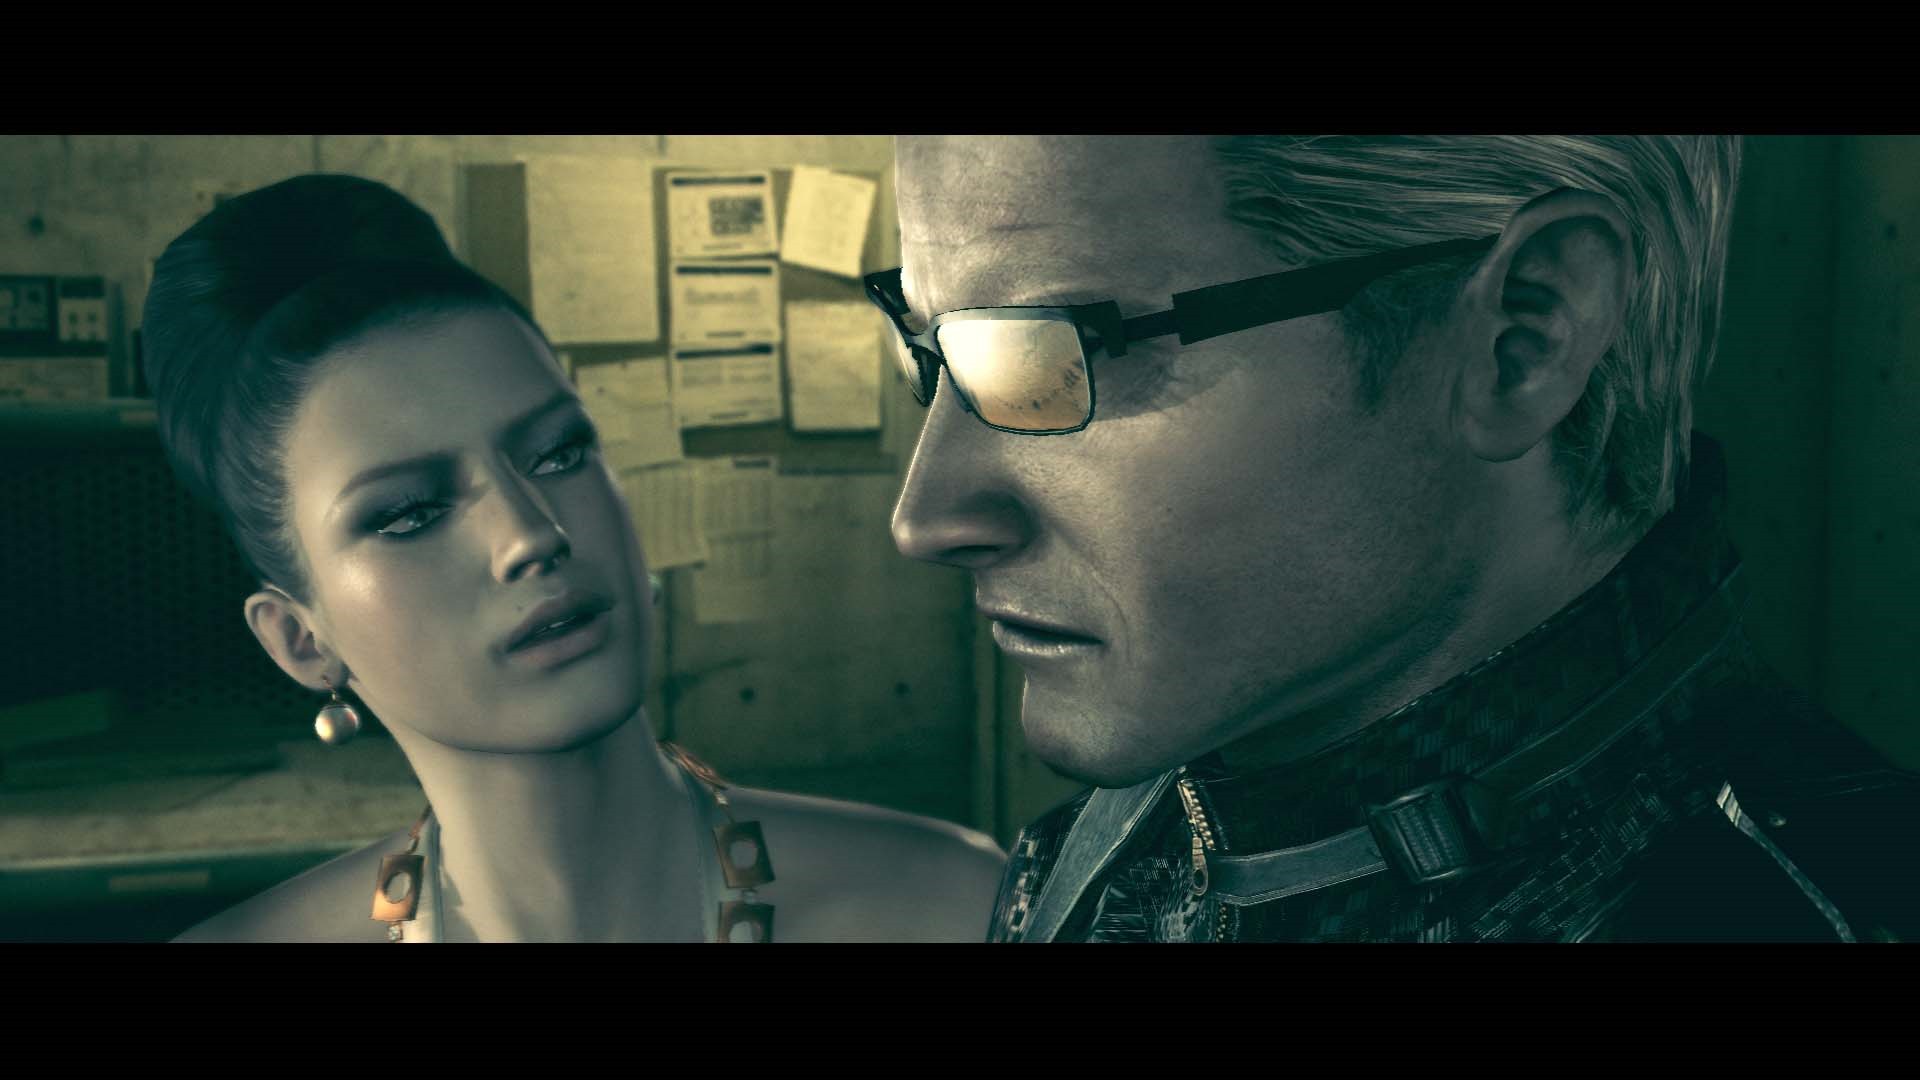 Resident Evil 5 chega ao PlayStation 4 em 28 de junho - MeuPlayStation